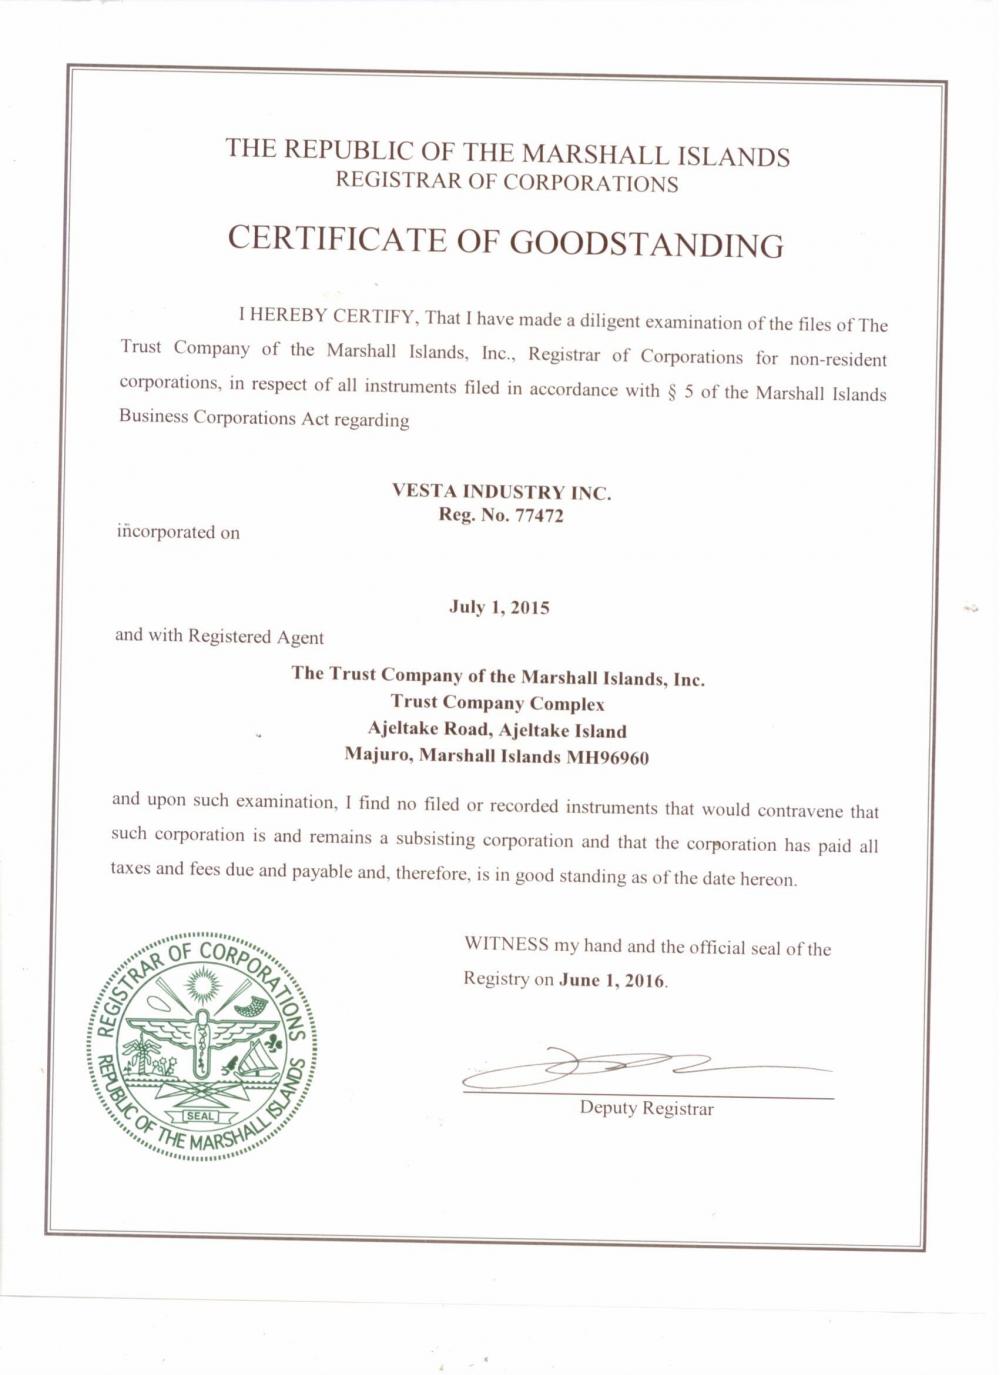 Goodstanding Certificate